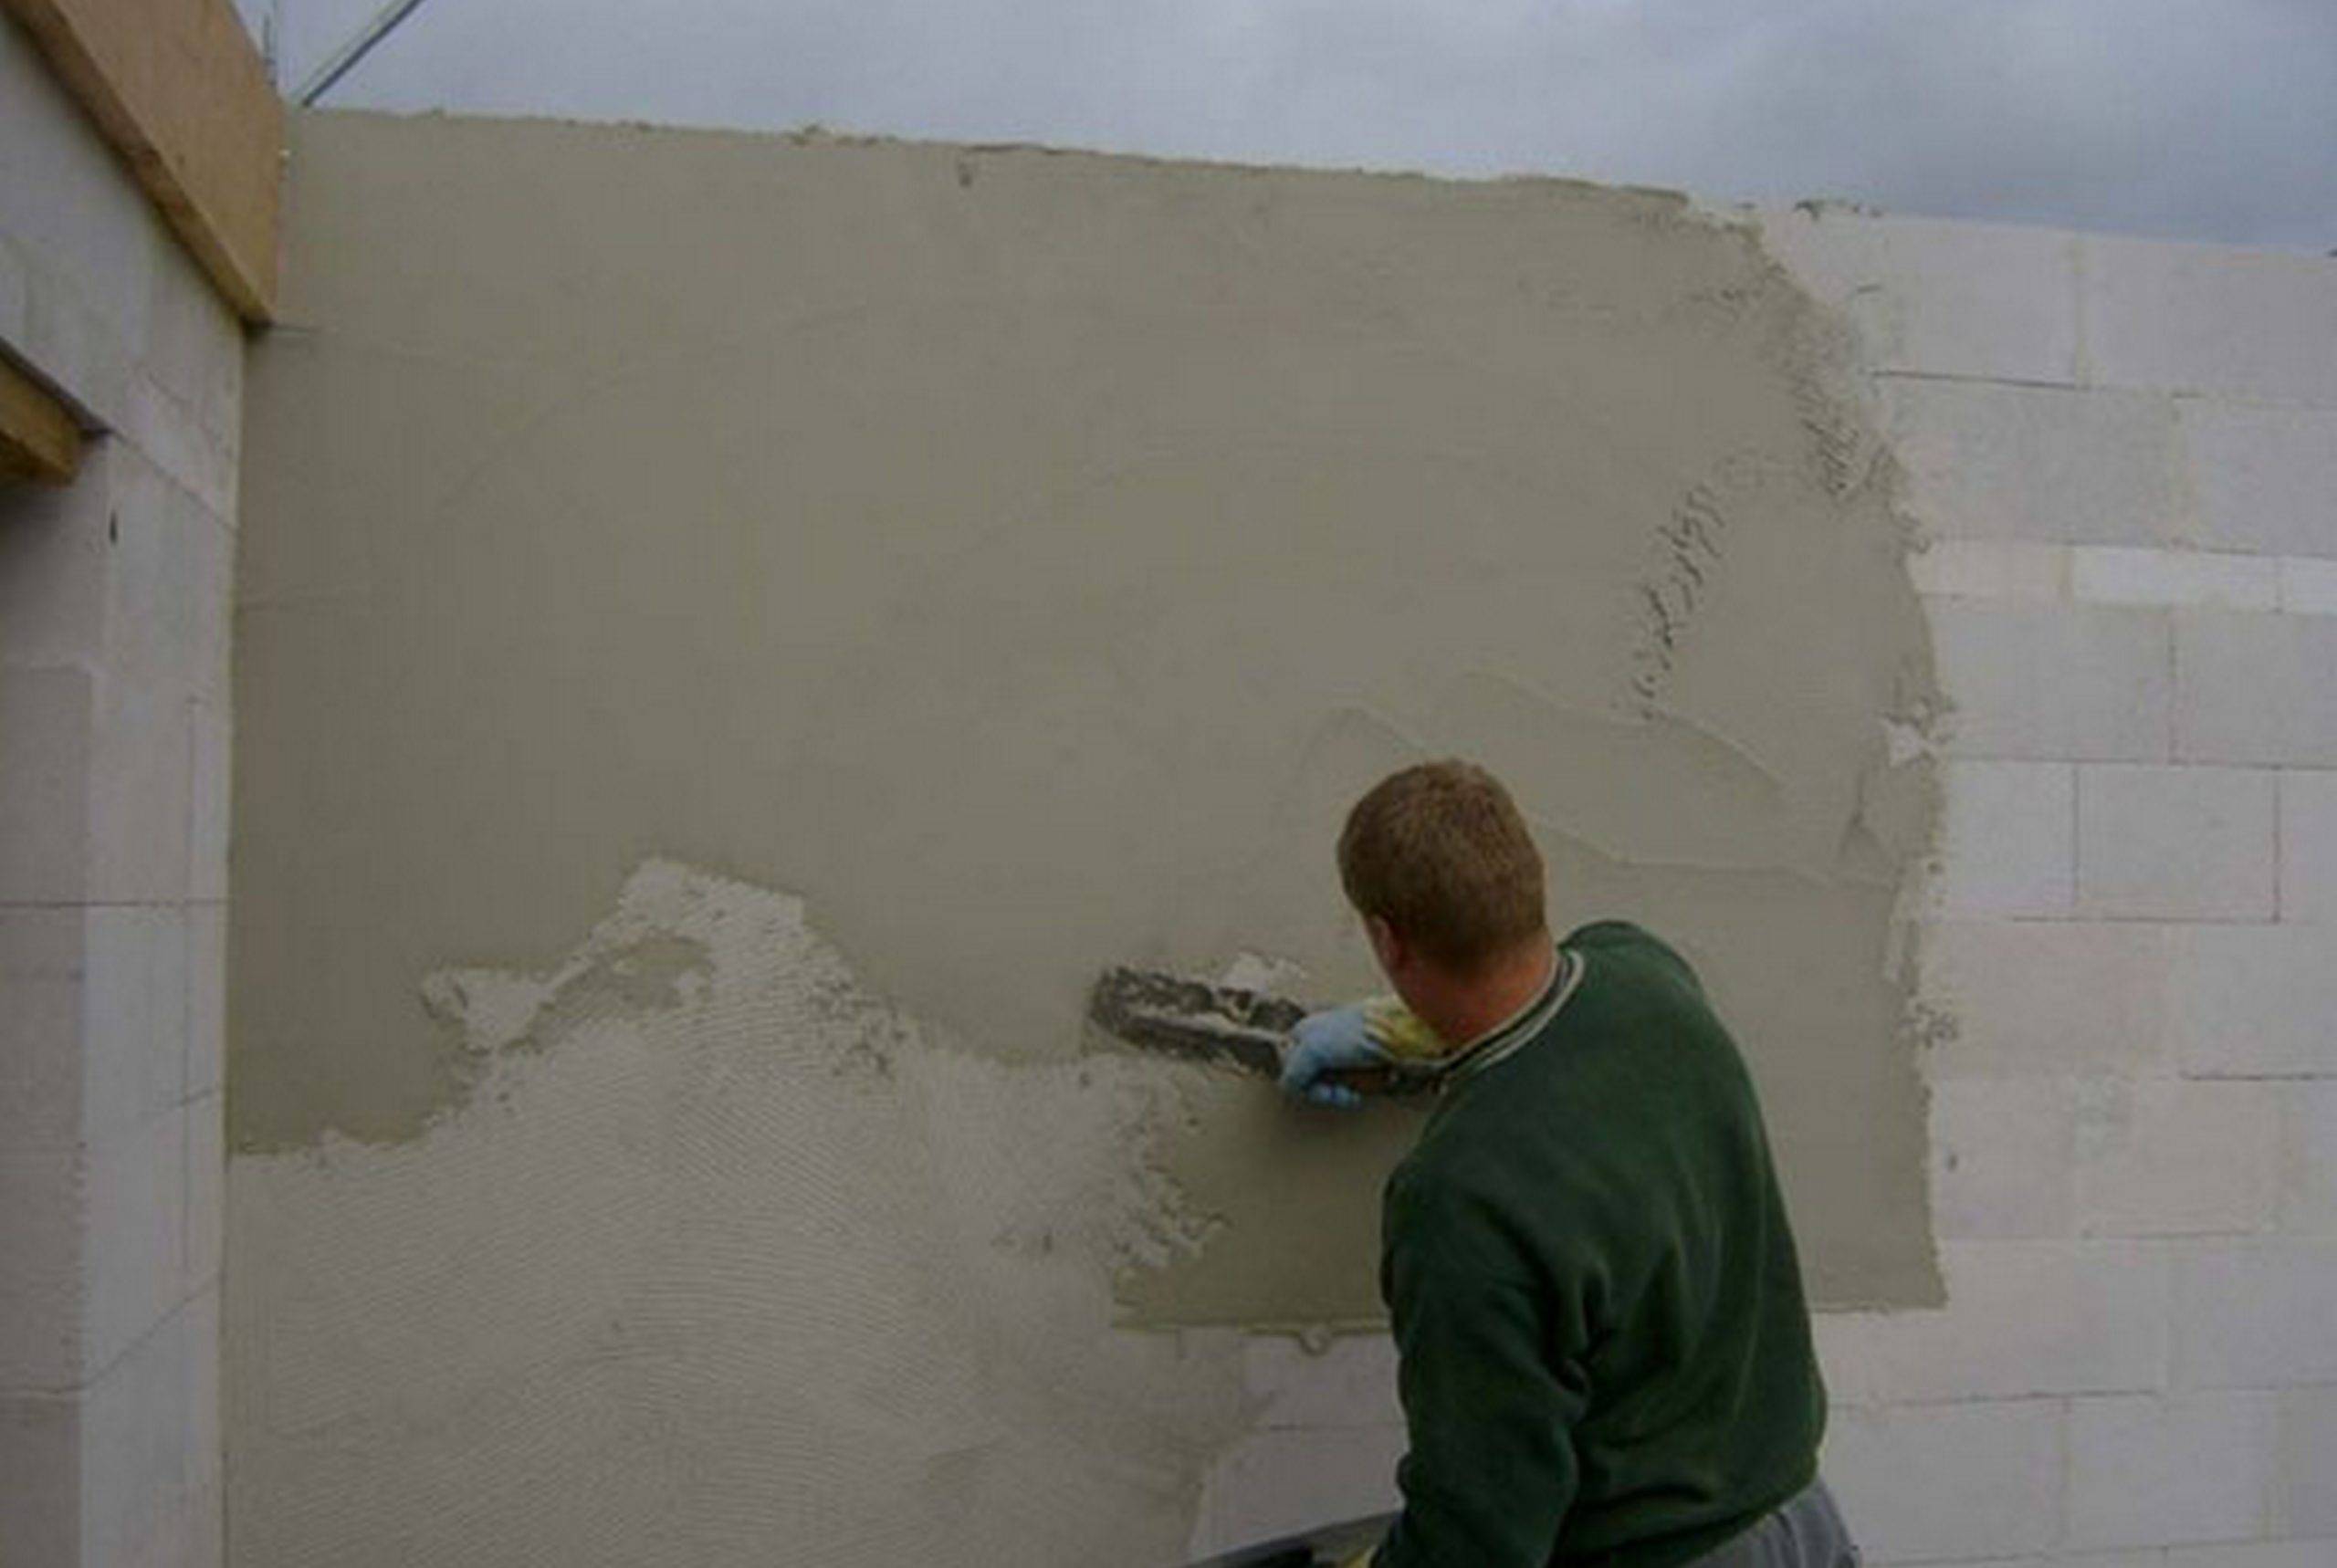 Штукатурка пеноблока: чем и как правильно оштукатурить стены внутри помещения (фото, видео)